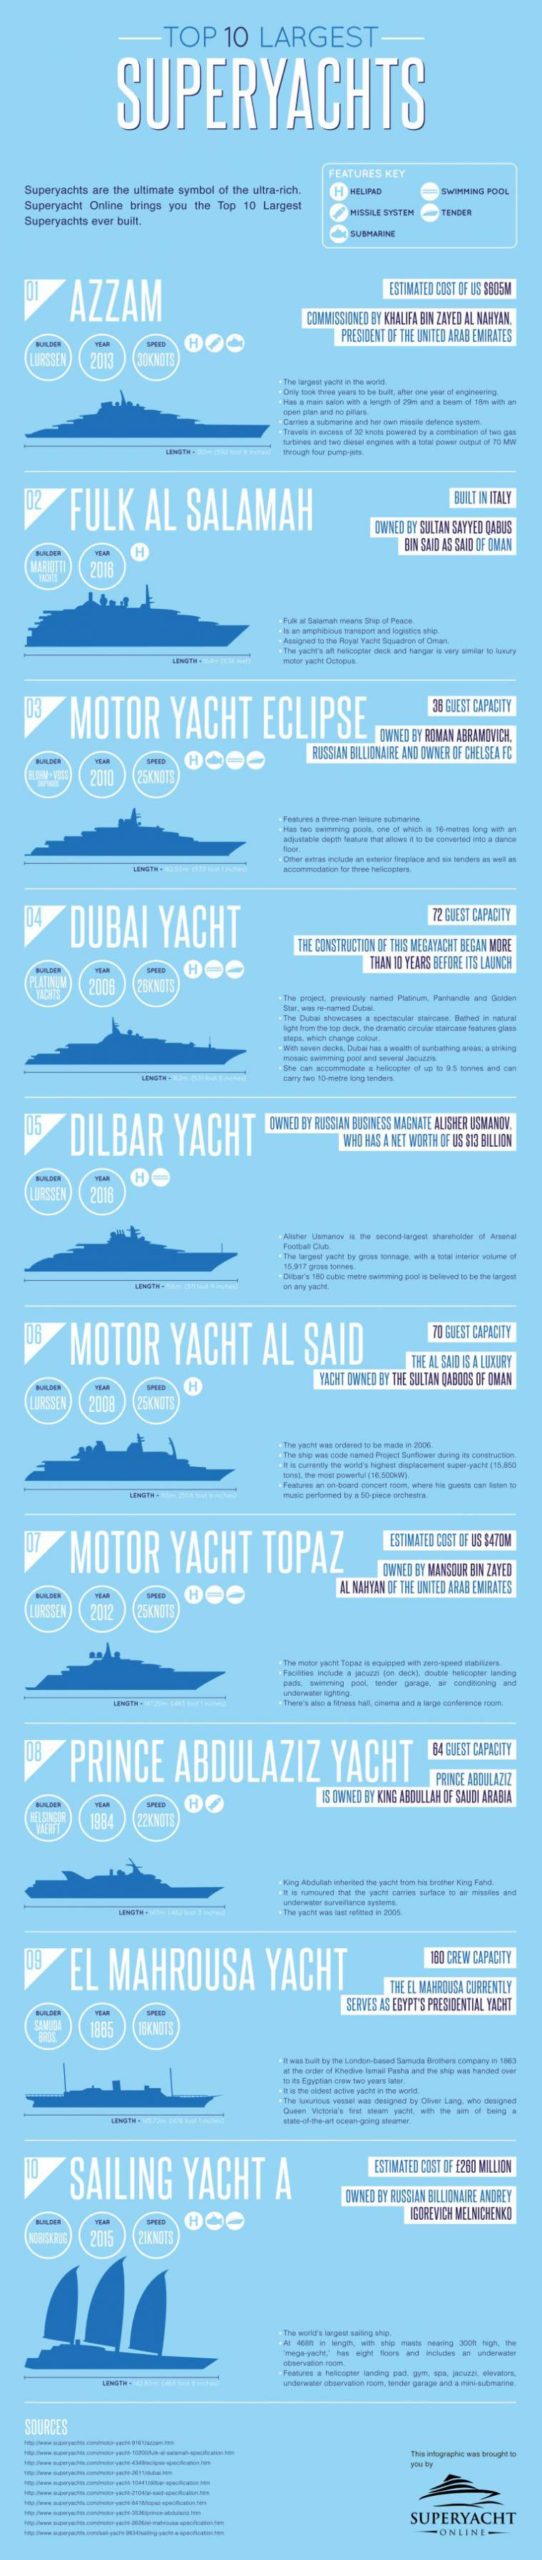 Top-10-Largest-Superyachts